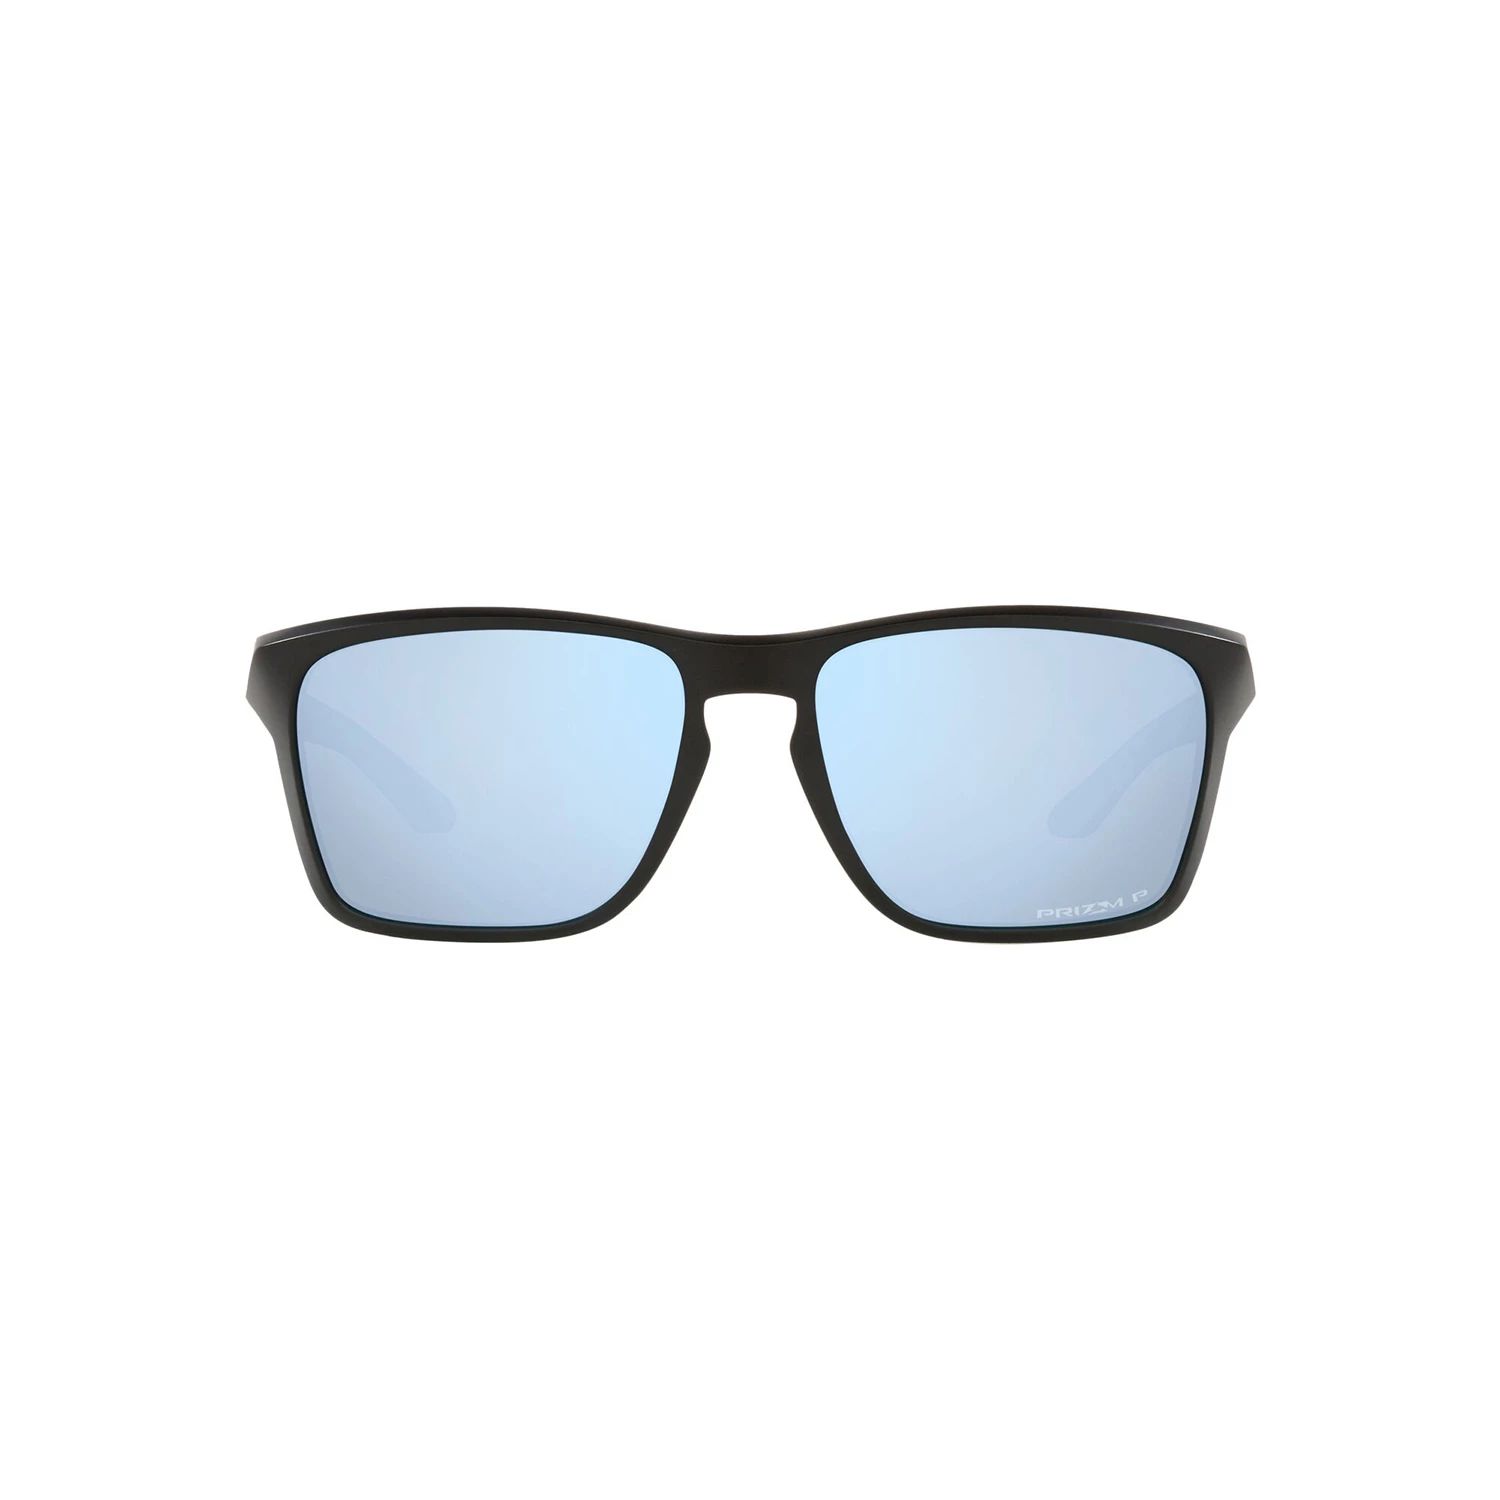 поляризационные солнцезащитные очки oo9448 57 sylas oakley Мужские прямоугольные поляризованные солнцезащитные очки Oakley Sylas OO9448 60 мм